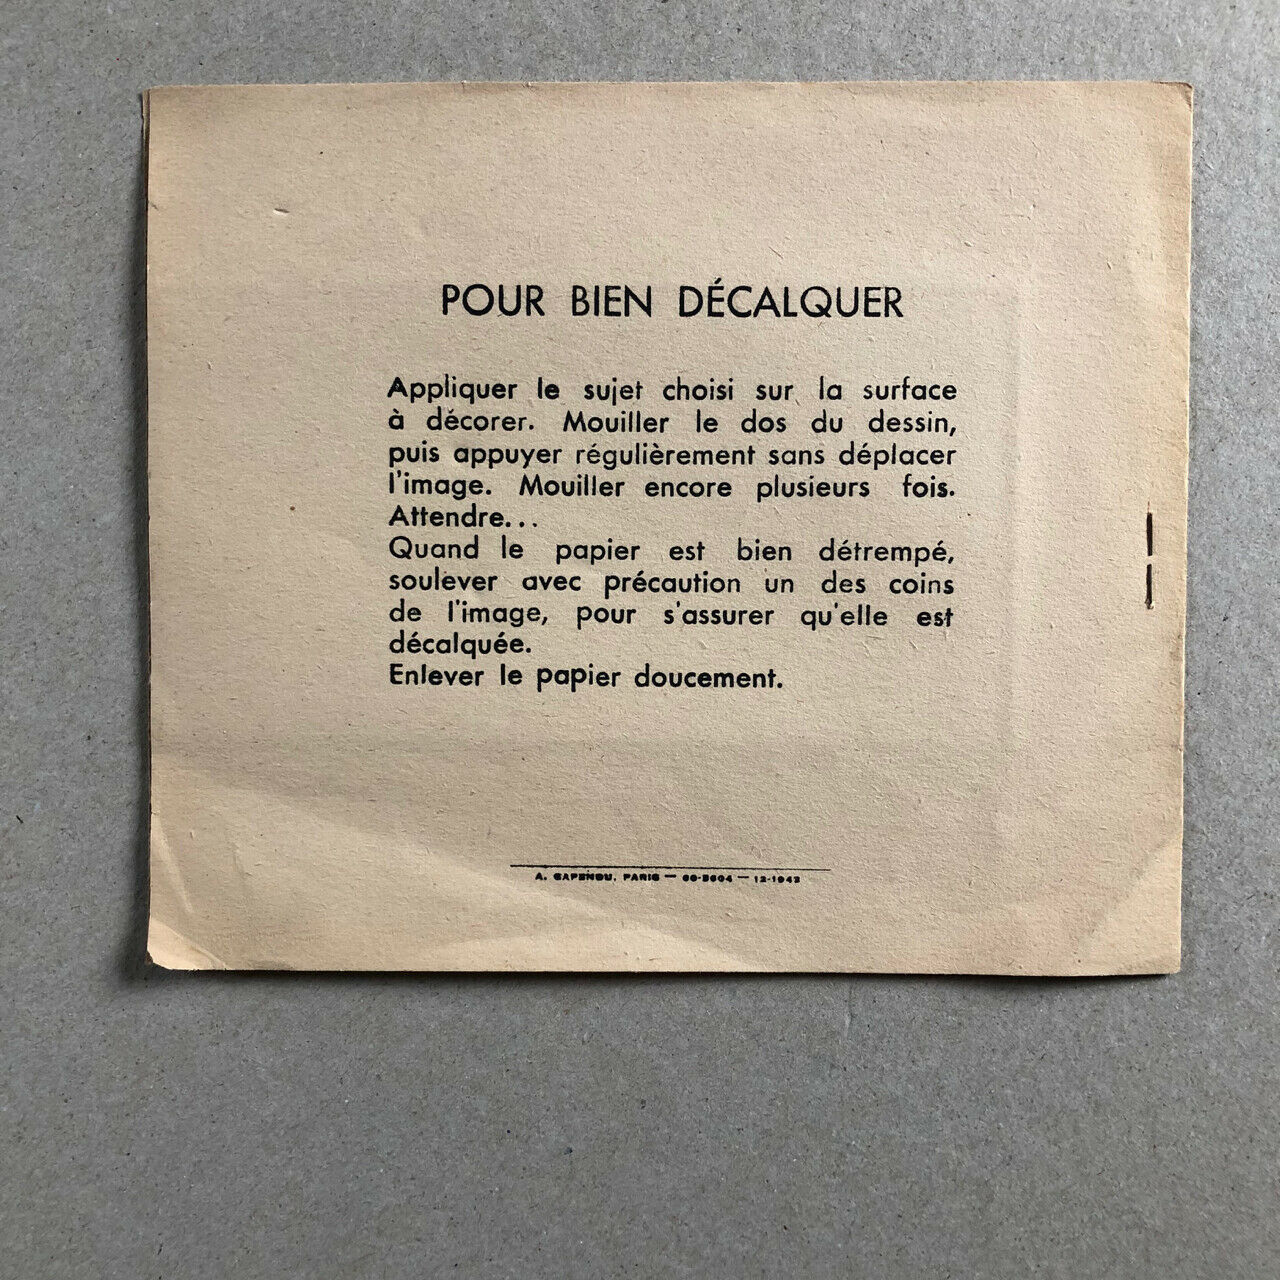 [Colonialism] — Jean Matet — decals — Capendu — circa 1950.